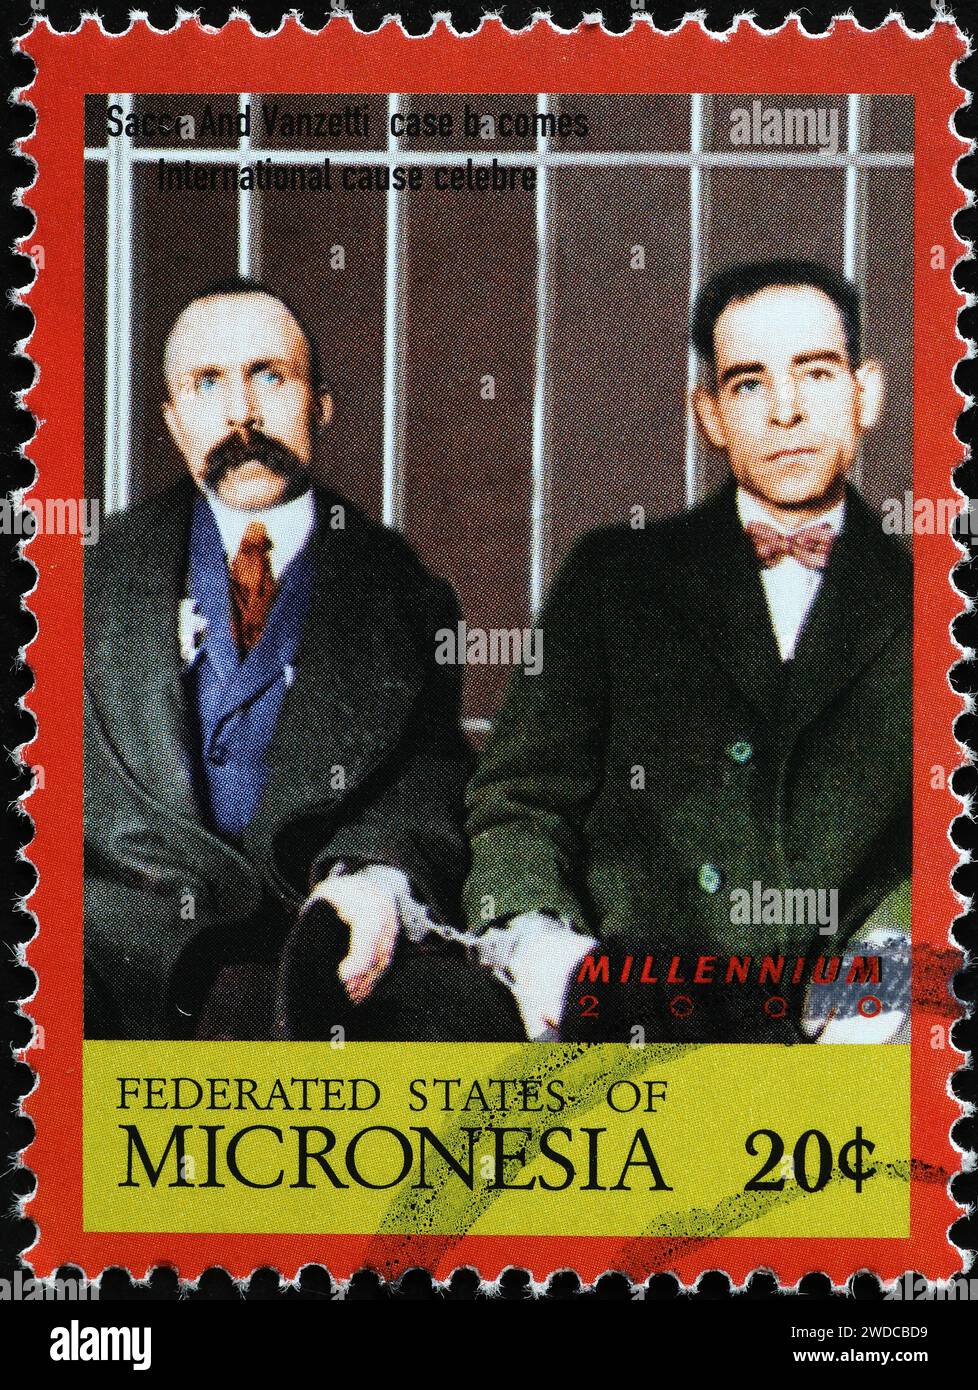 Photographie de Sacco e Vanzetti sur timbre-poste Banque D'Images